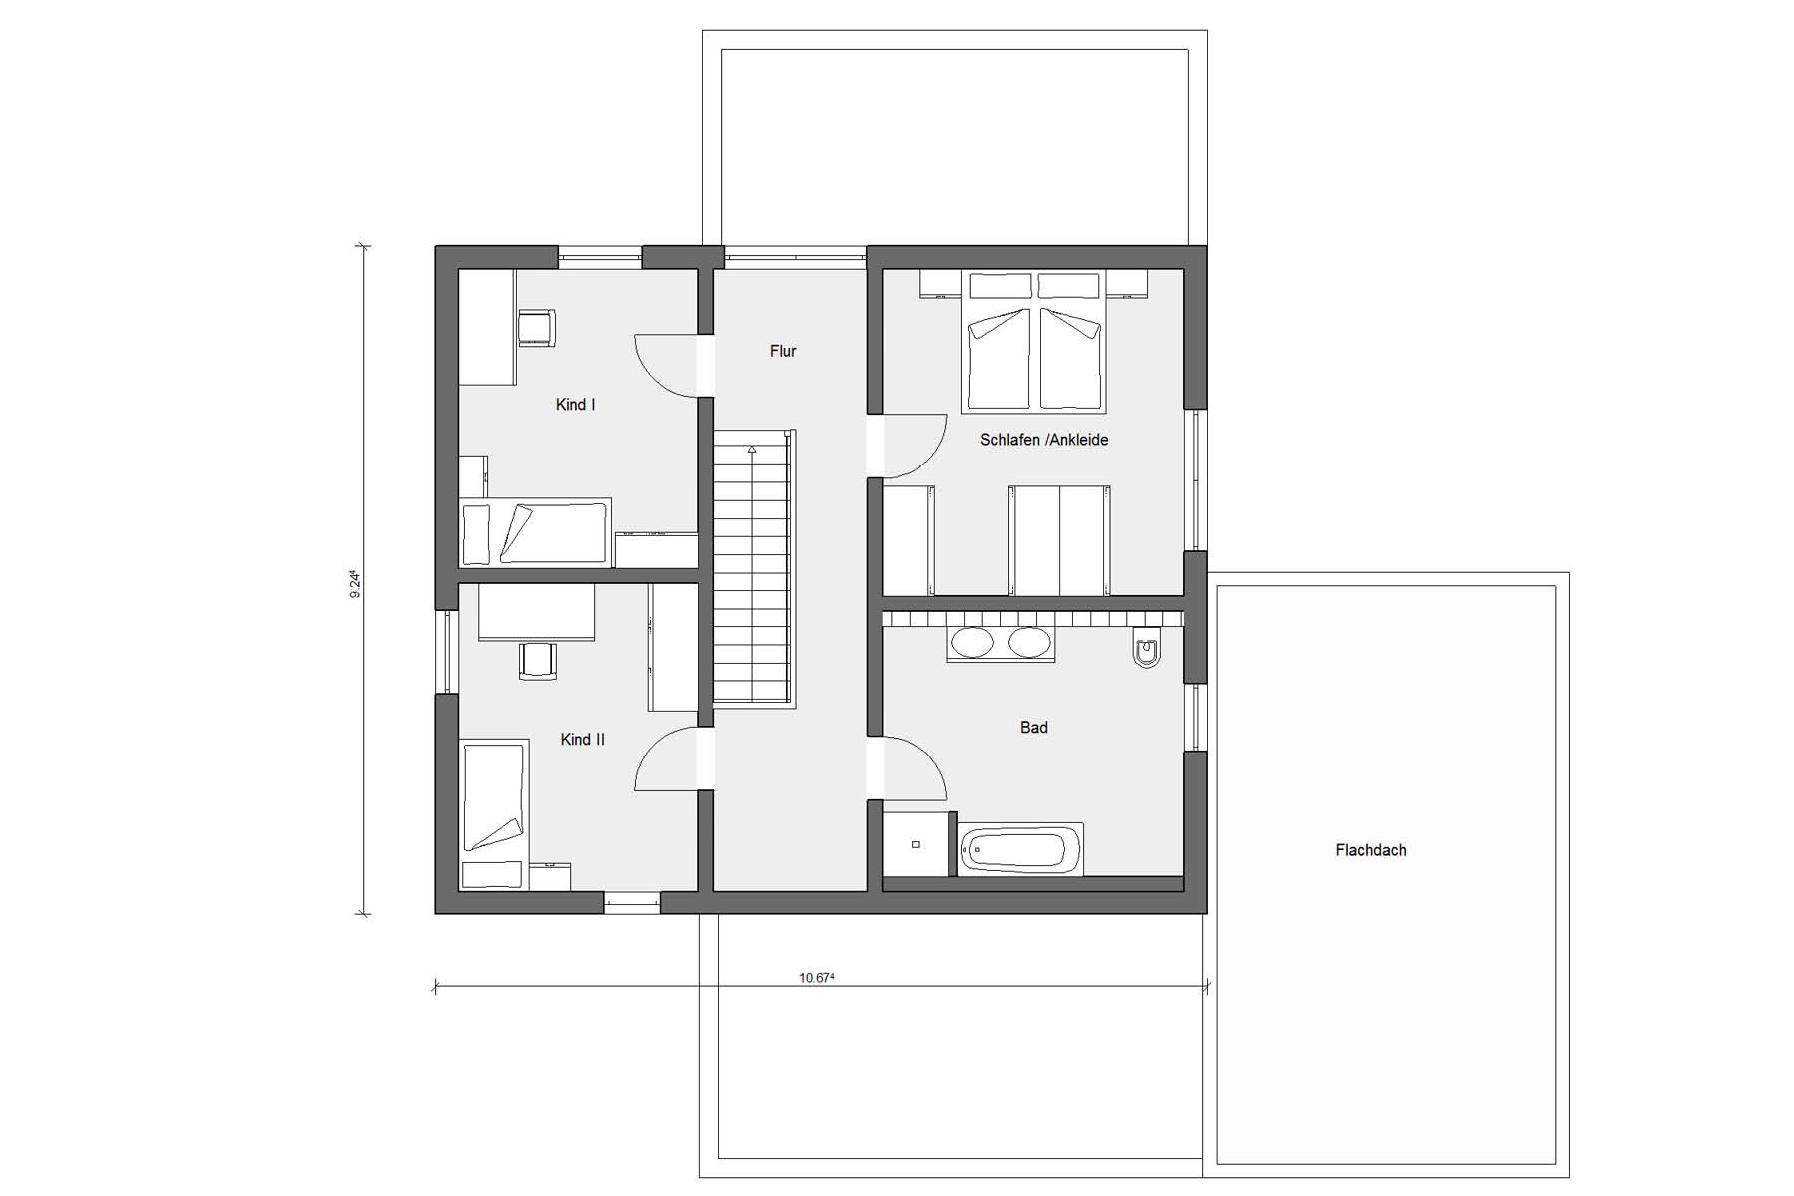 Plan de l'étage mansardé E 20-157.2 Maison CUBE de SchwörerHaus